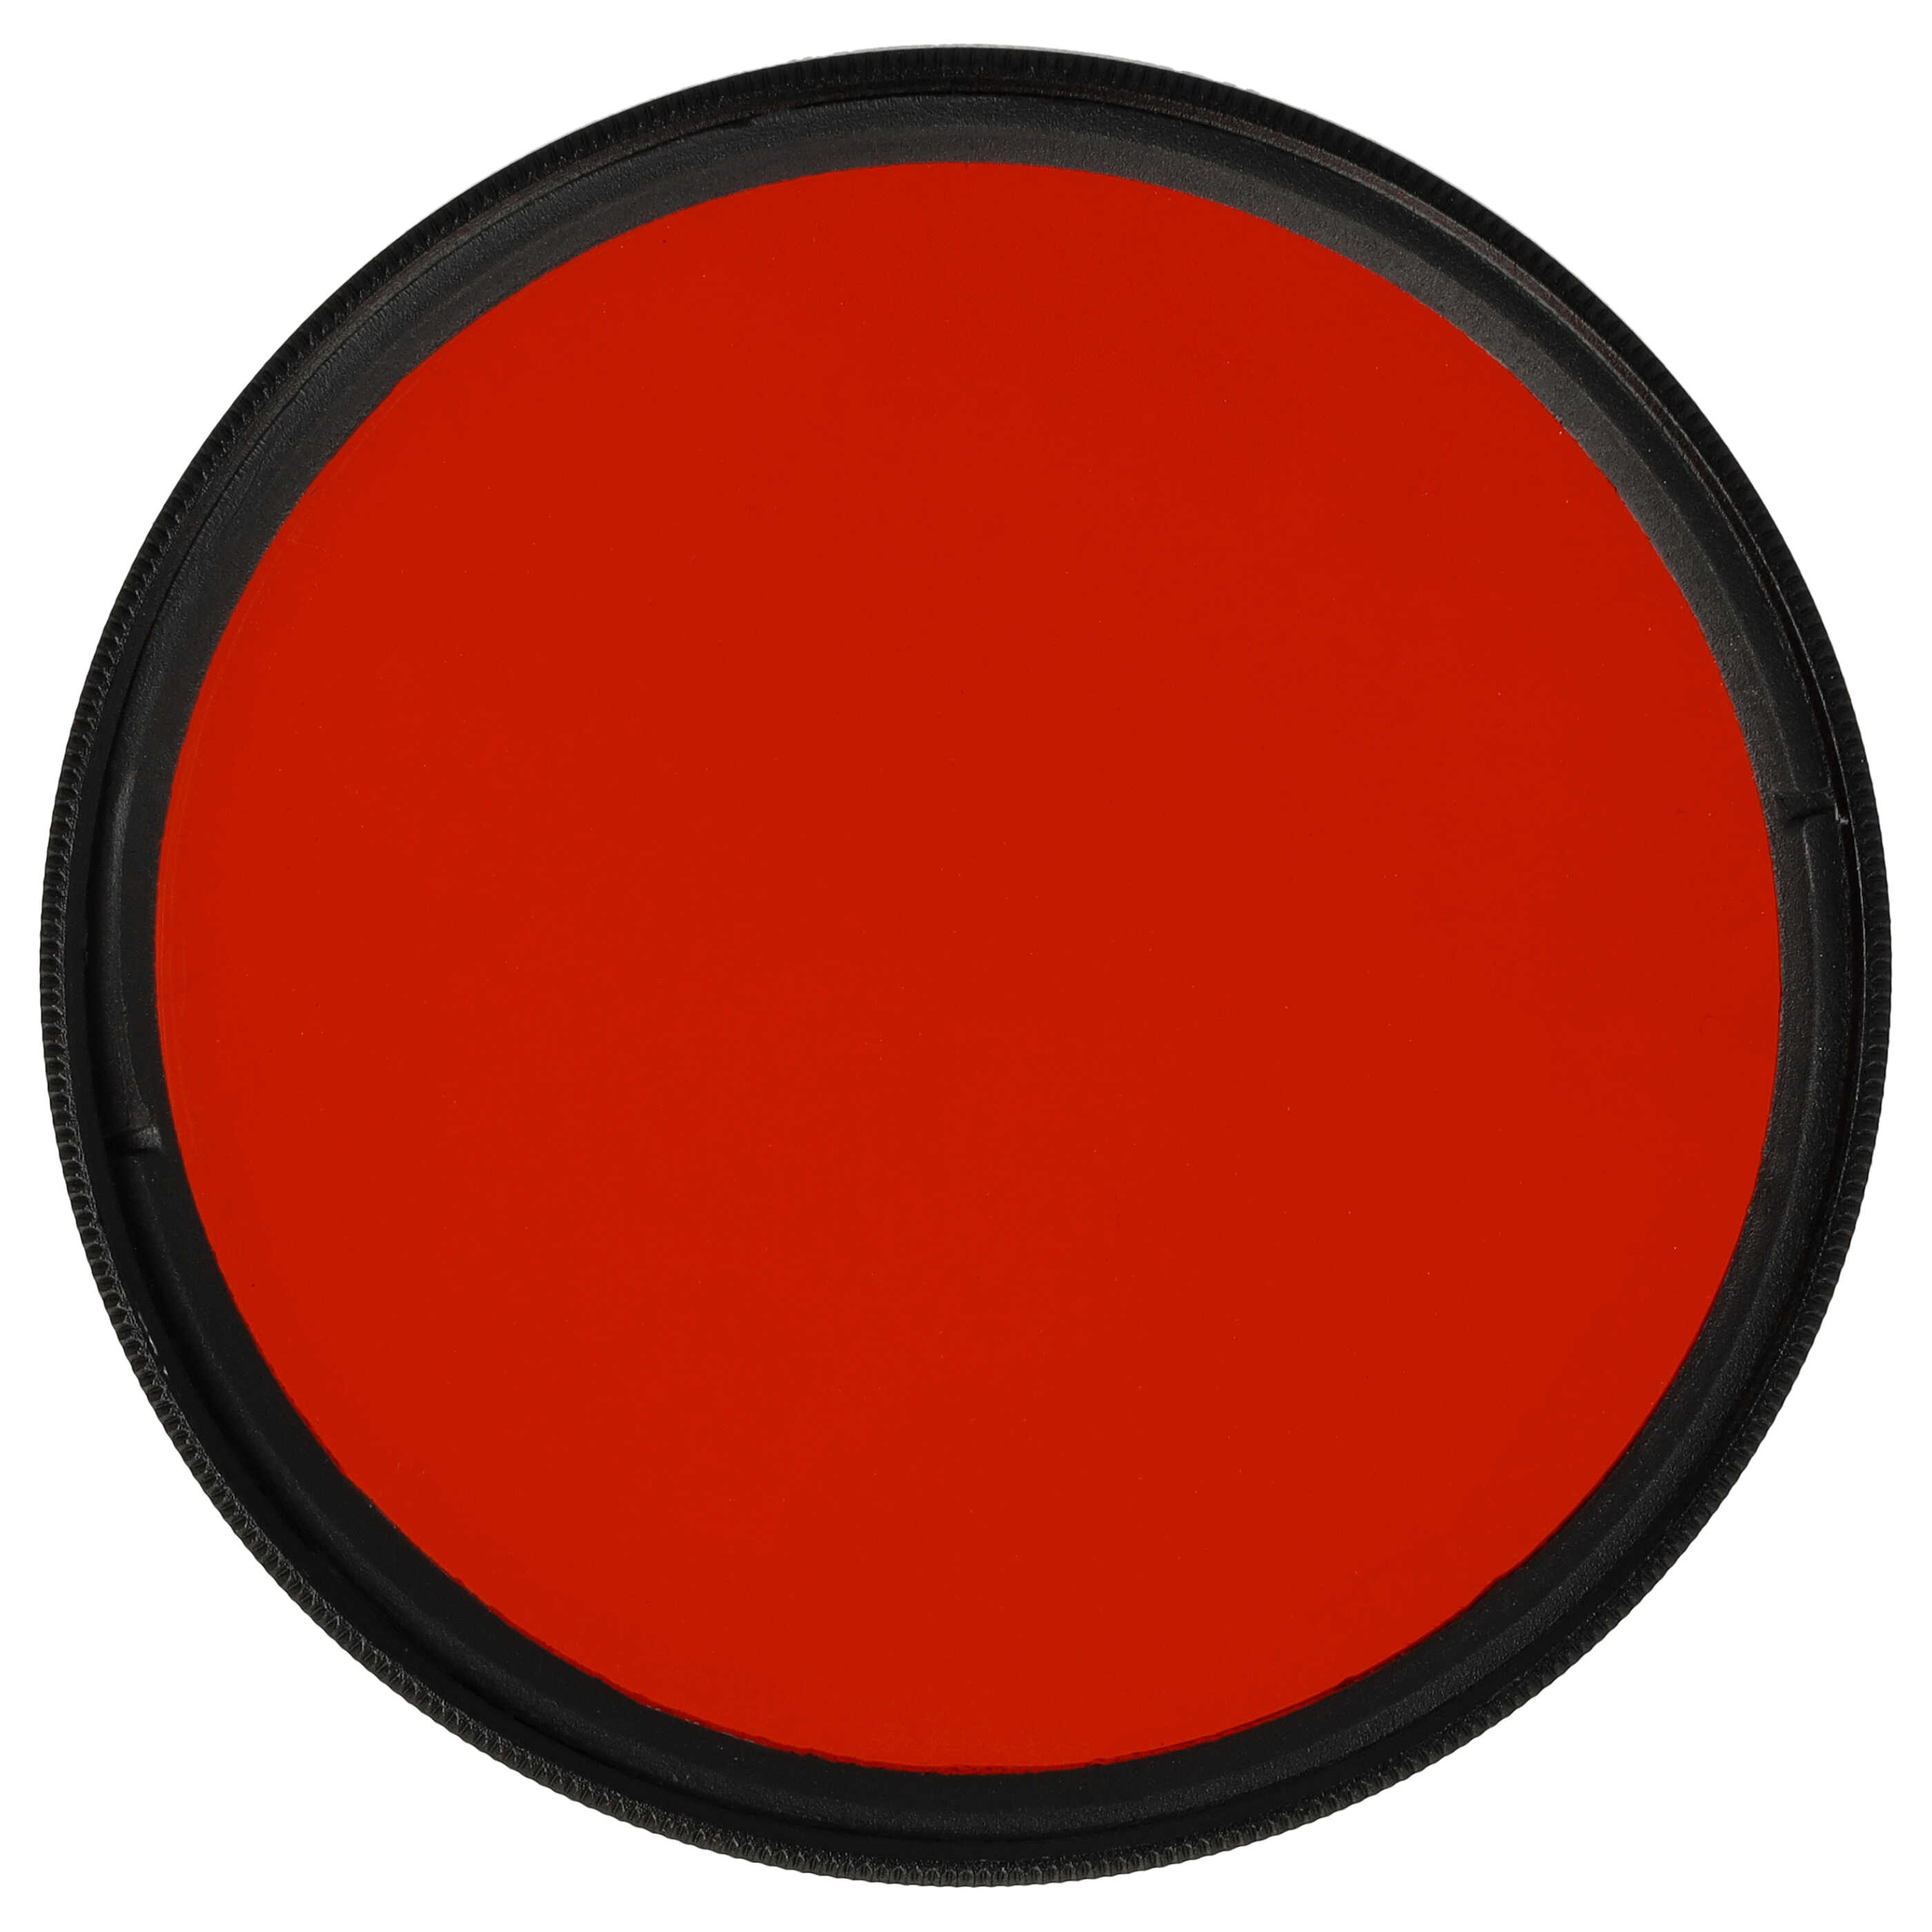 Filtro colorato per obiettivi fotocamera con filettatura da 62 mm - filtro arancione